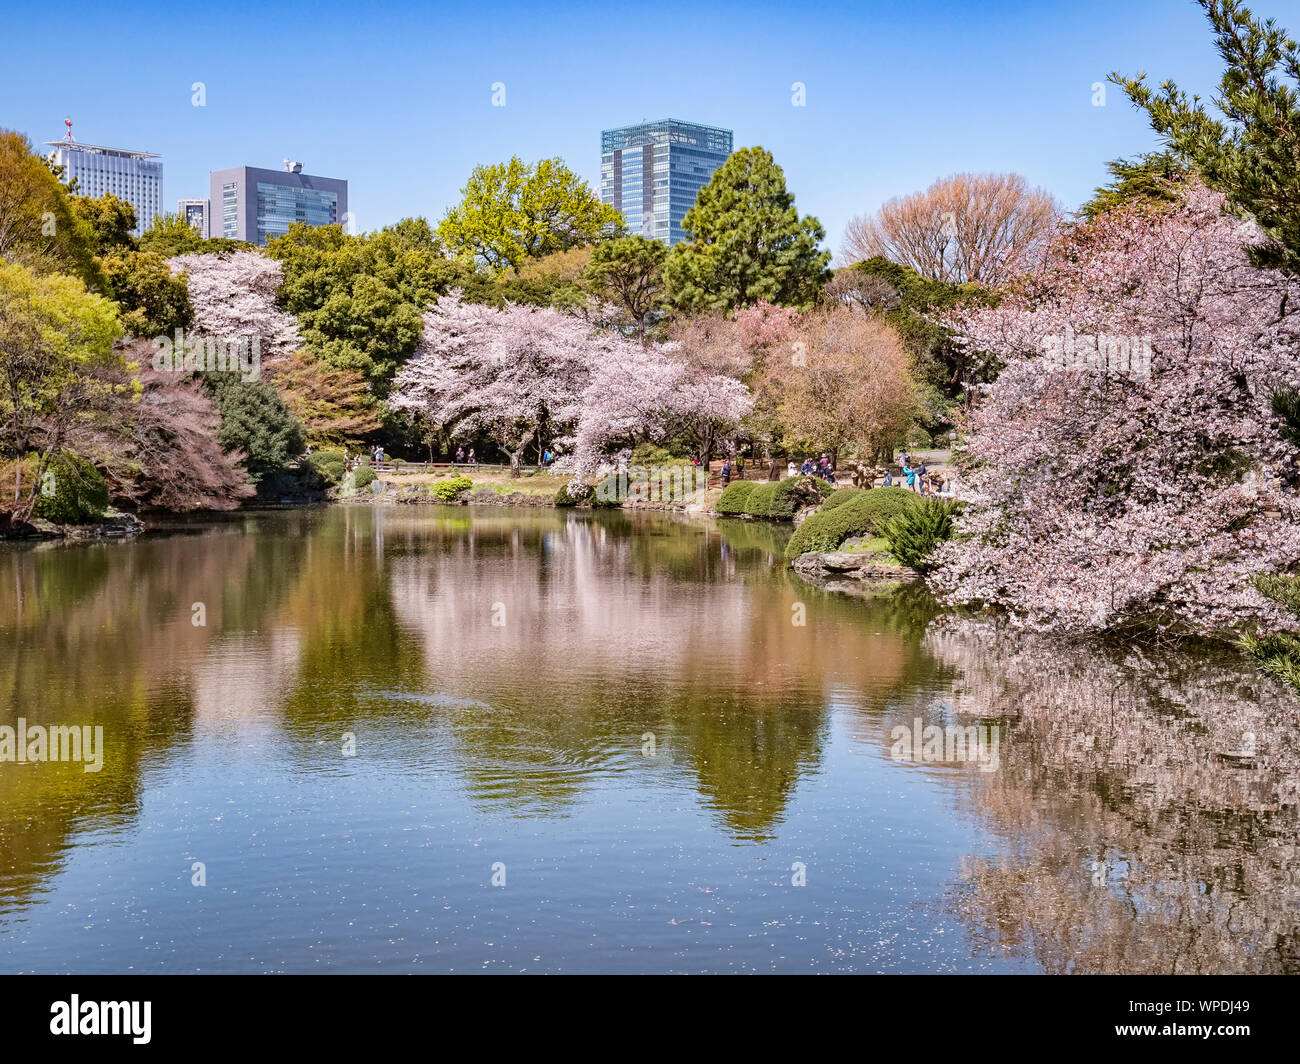 4 avril 2019 : Tokyo, Japon - Fleur de cerisier et le Shinjuku bâtiments reflète dans le lac du Jardin National de Shinjuku Gyoen, Tokyo. Banque D'Images